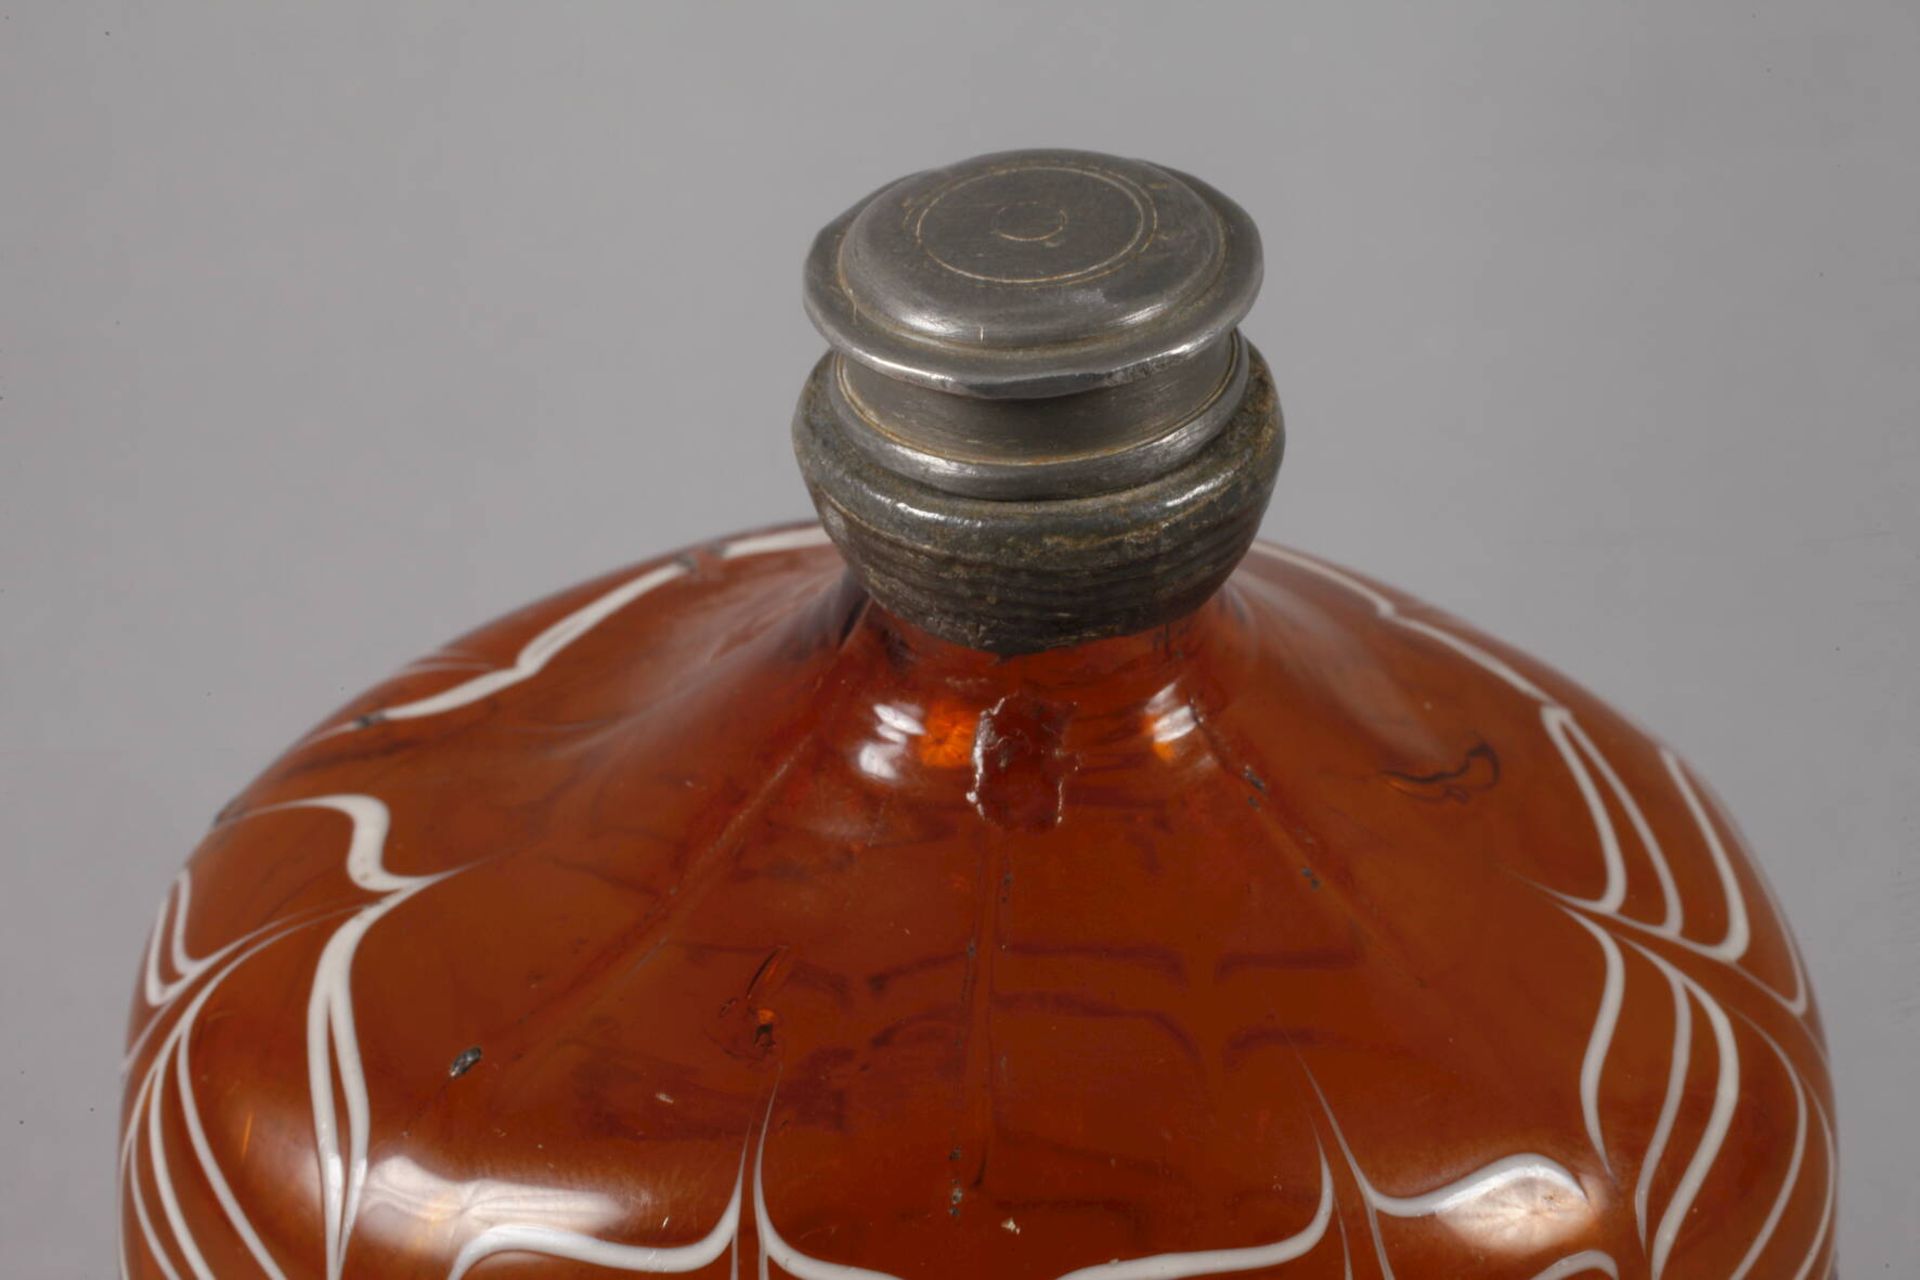 Alpenländische Schnapsflasche18. Jh., honigbraunes Glas, blasiger Abriss, hexagonal facettiert, - Bild 6 aus 6